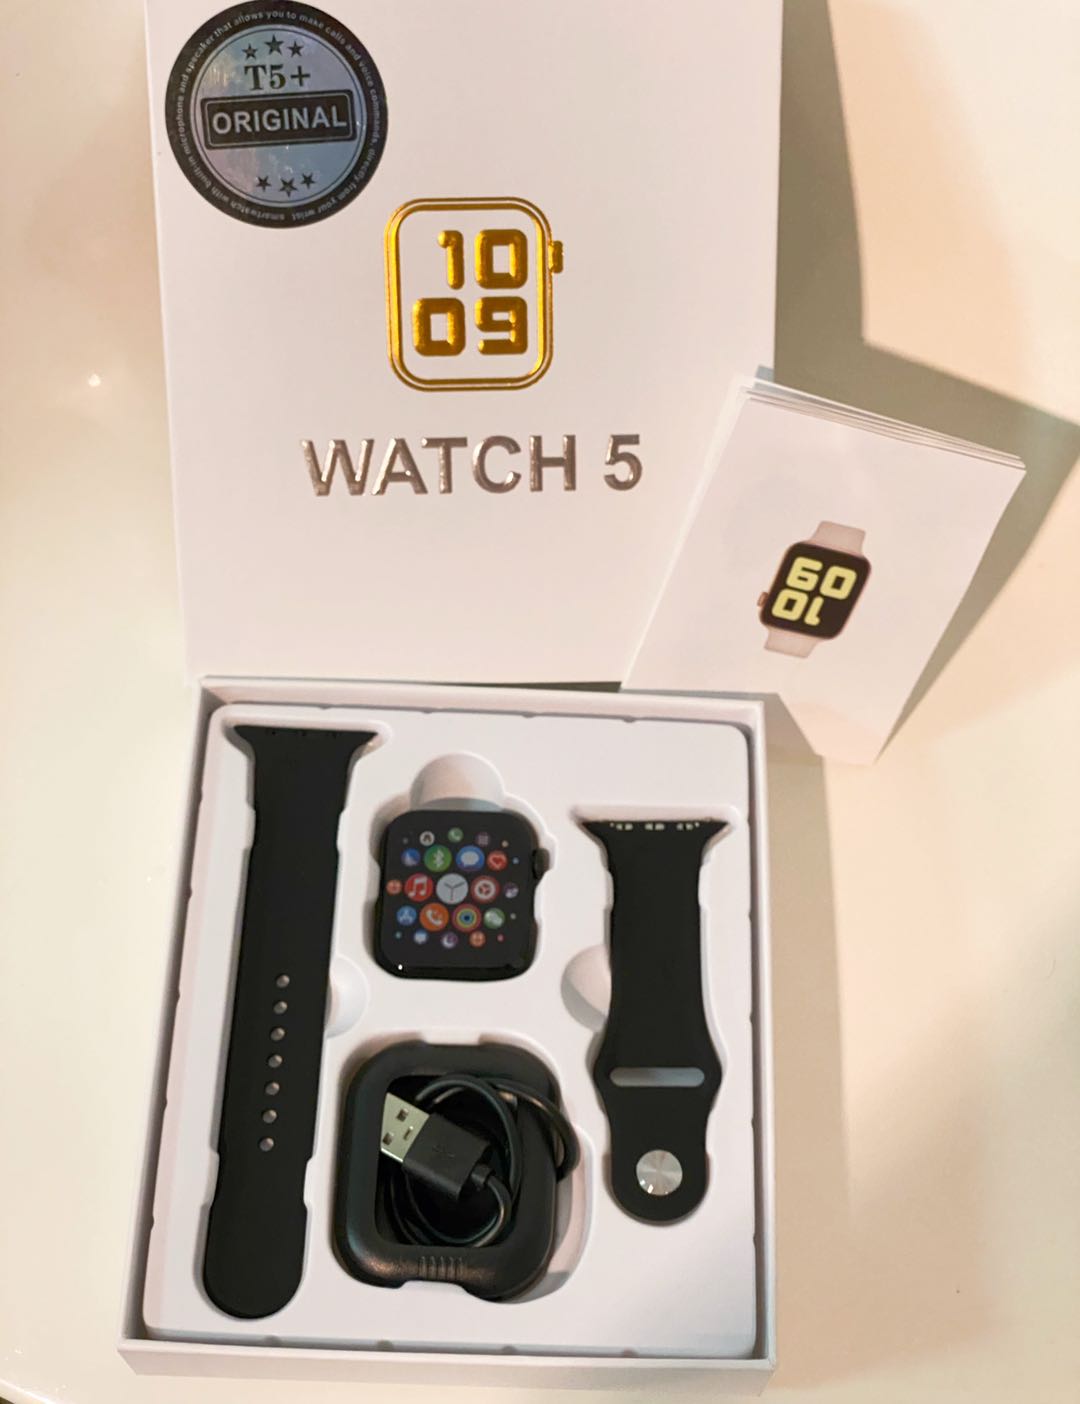 ใหม่ล่าสุด smart watcht T5+  / Watch5 โทรได้  มีประกัน  t5 smart wat